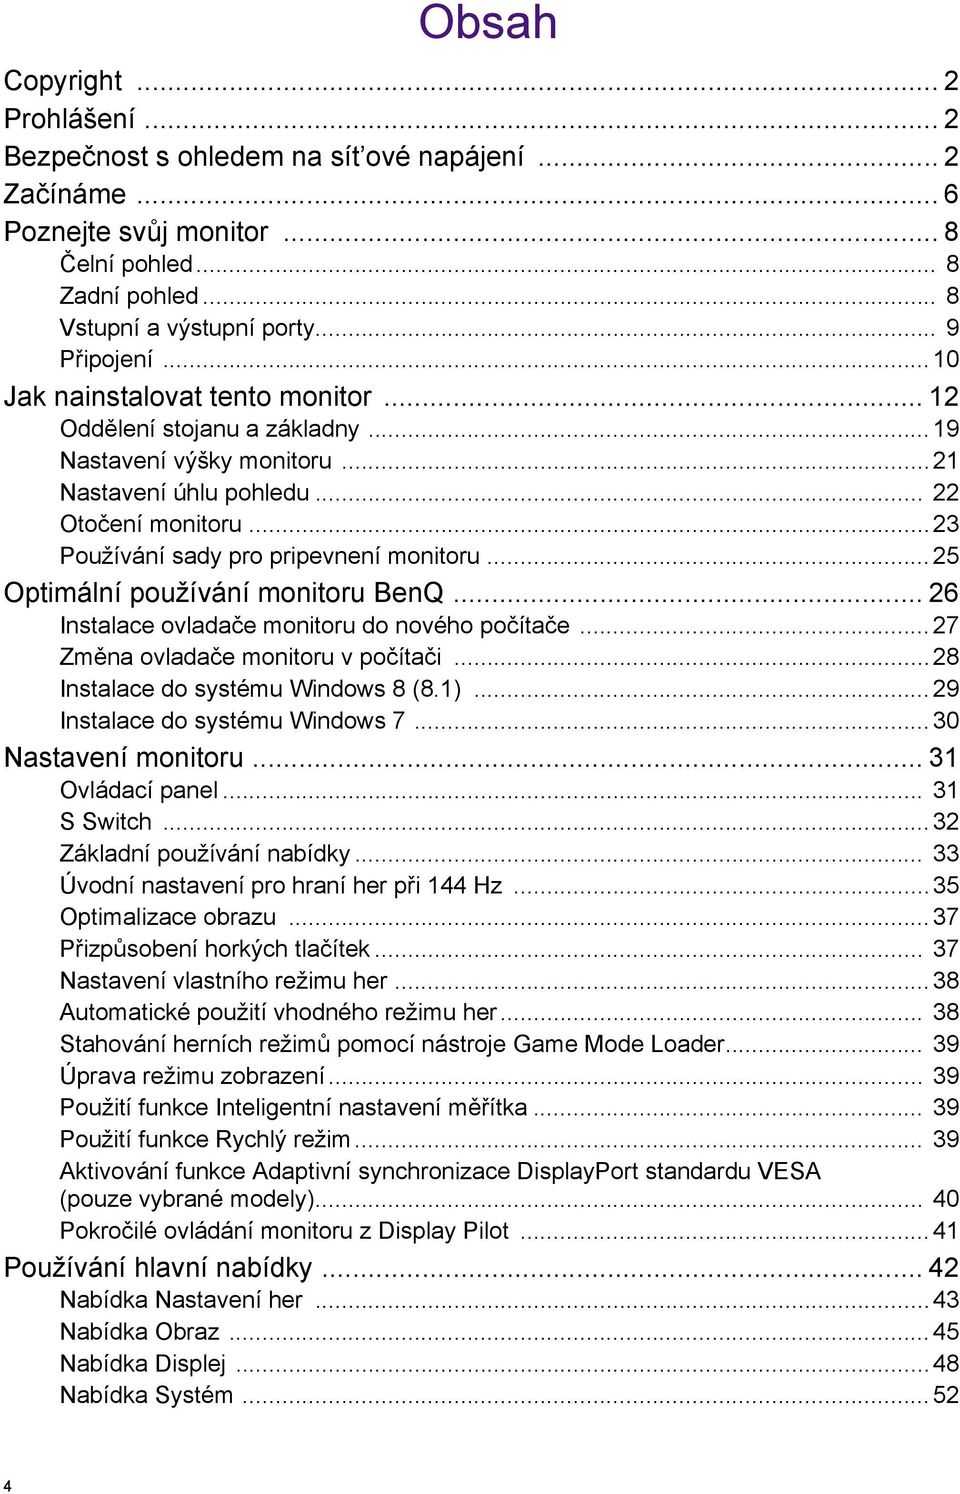 ..25 Optimální používání monitoru BenQ... 26 Instalace ovladače monitoru do nového počítače...27 Změna ovladače monitoru v počítači...28 Instalace do systému Windows 8 (8.1).